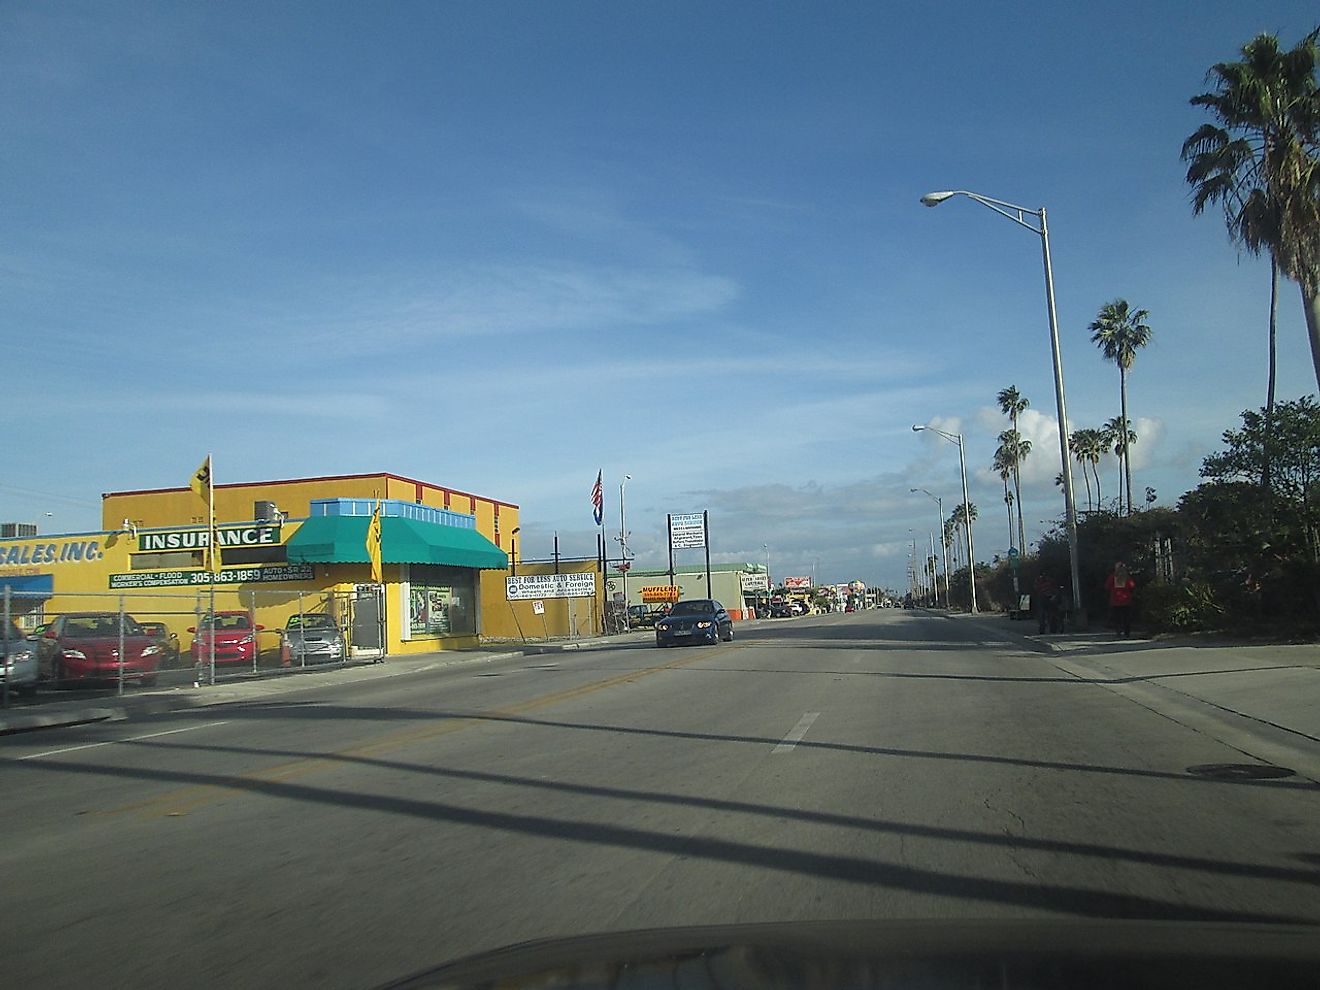 Palm Avenue in Hialeah. Image credit: Ivan Curra/Wikimedia.org